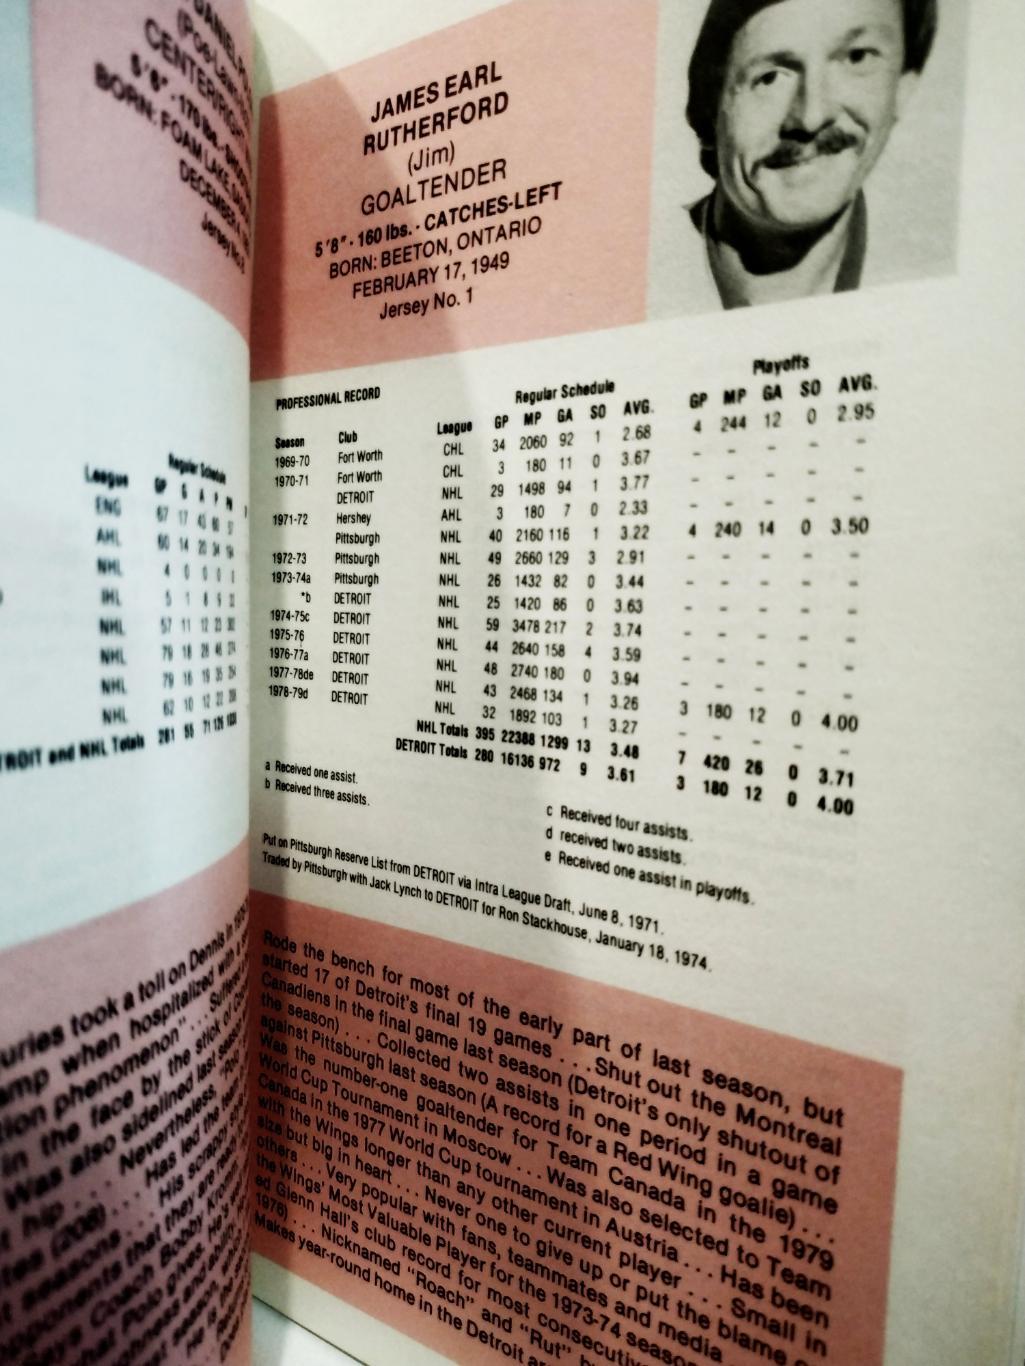 ХОККЕЙ СПРАВОЧНИК ЕЖЕГОДНИК НХЛ ДЕТРОЙТ 1979-80 DETROIT RED WINGS FACTS BOOK 3